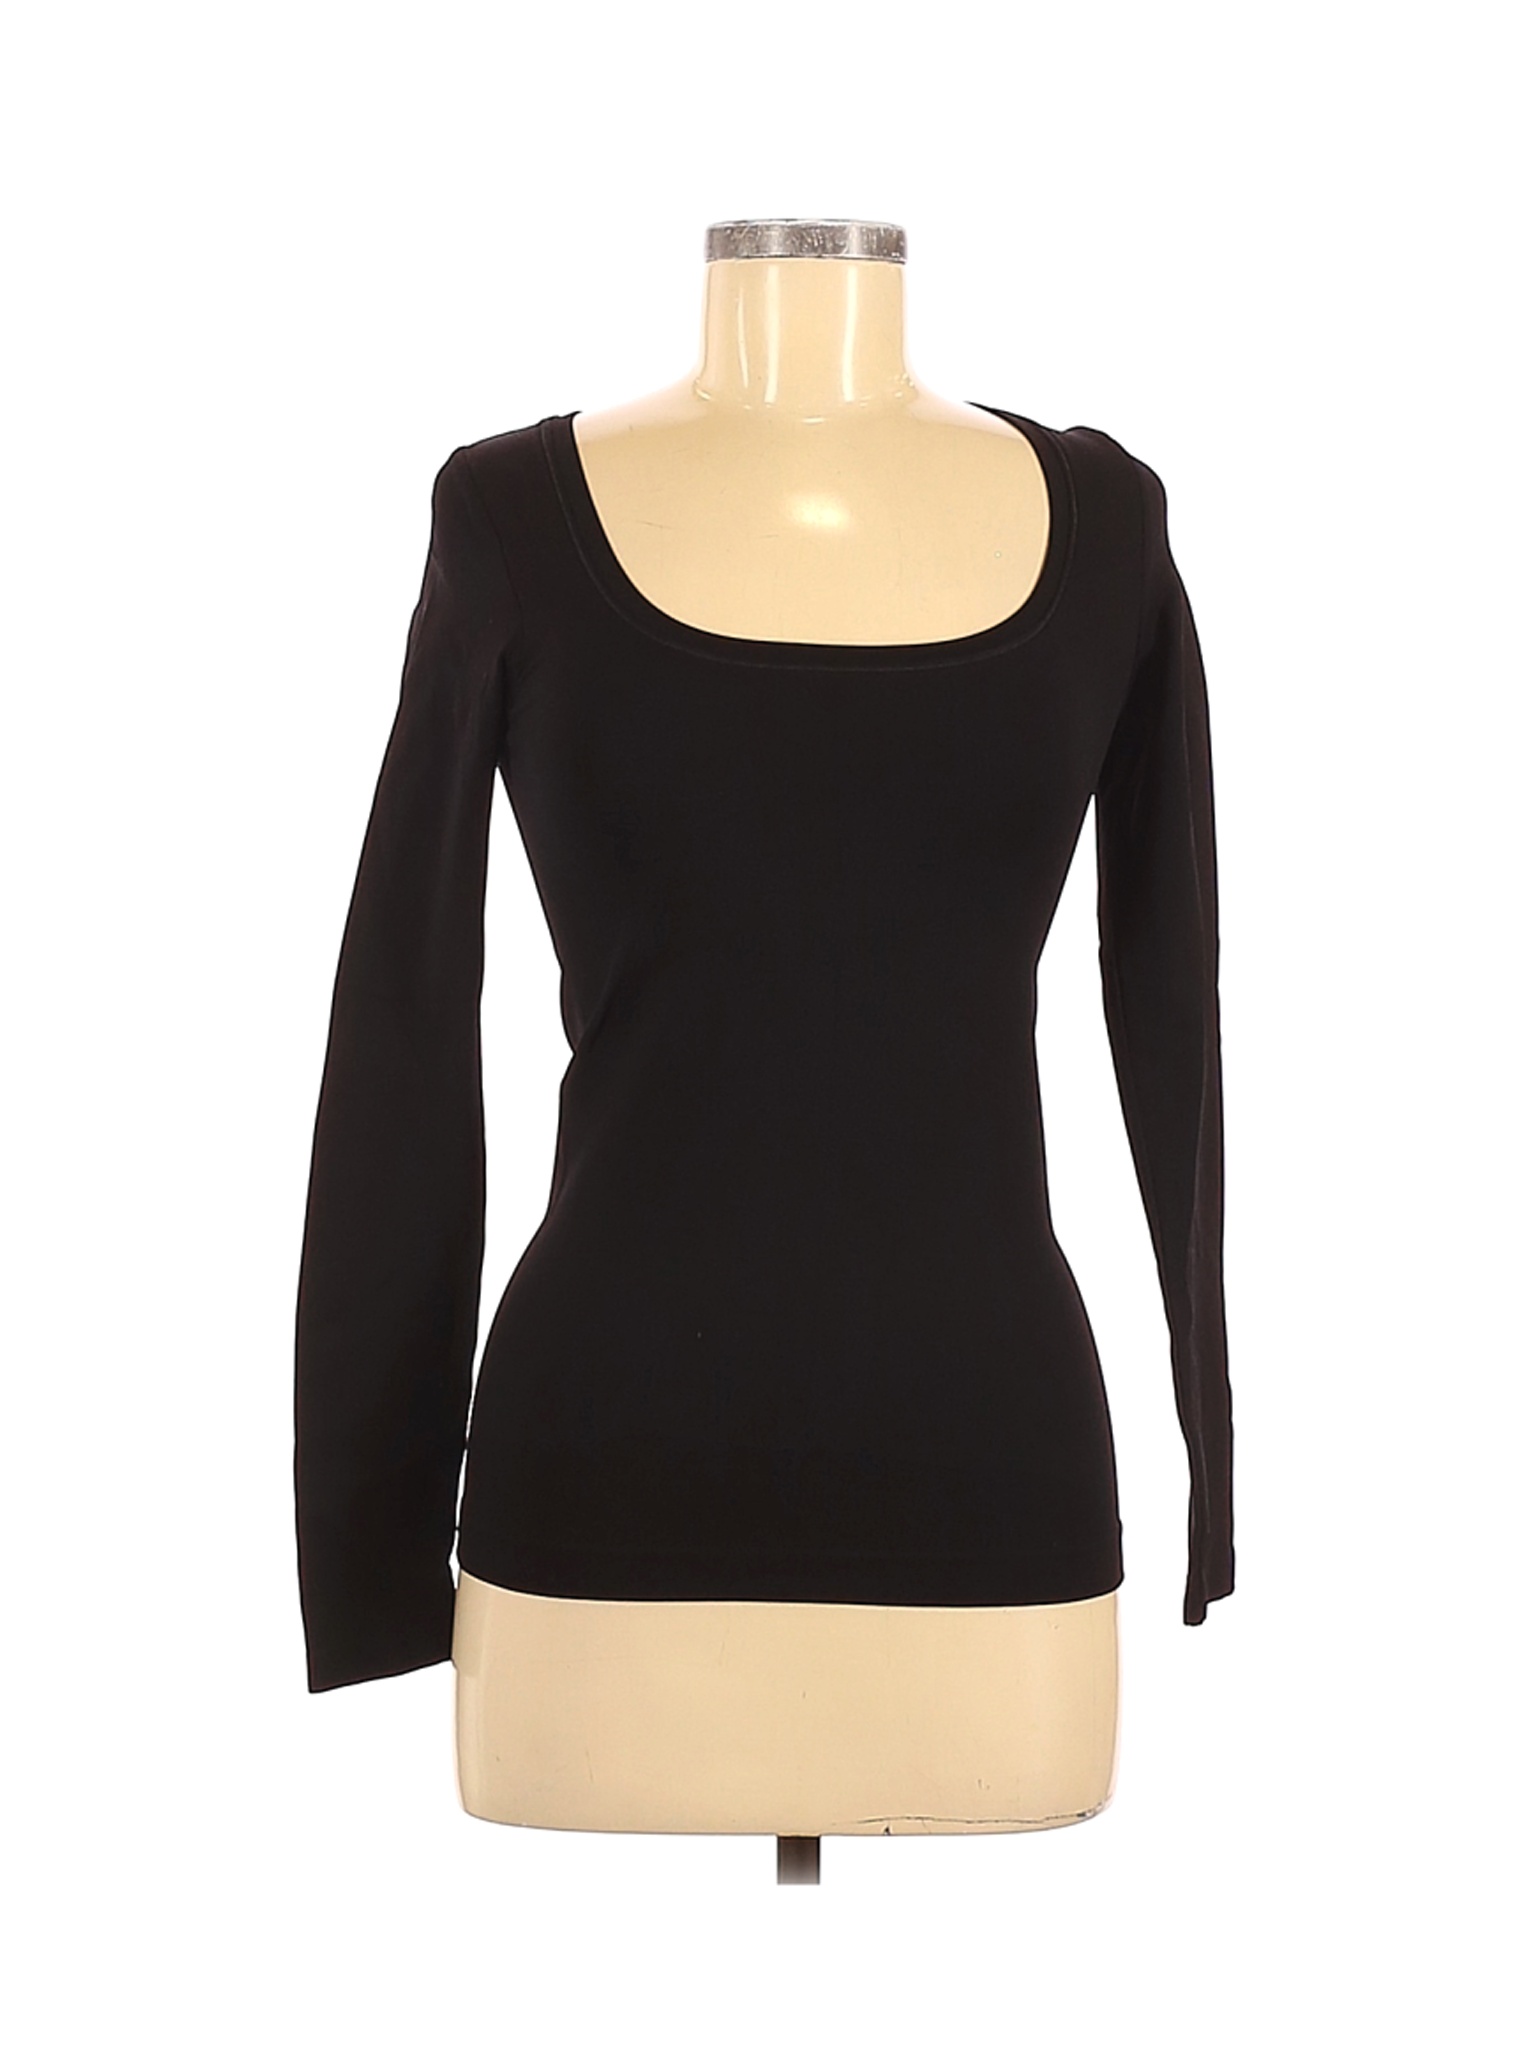 White House Black Market Women Black Long Sleeve T-Shirt S | eBay